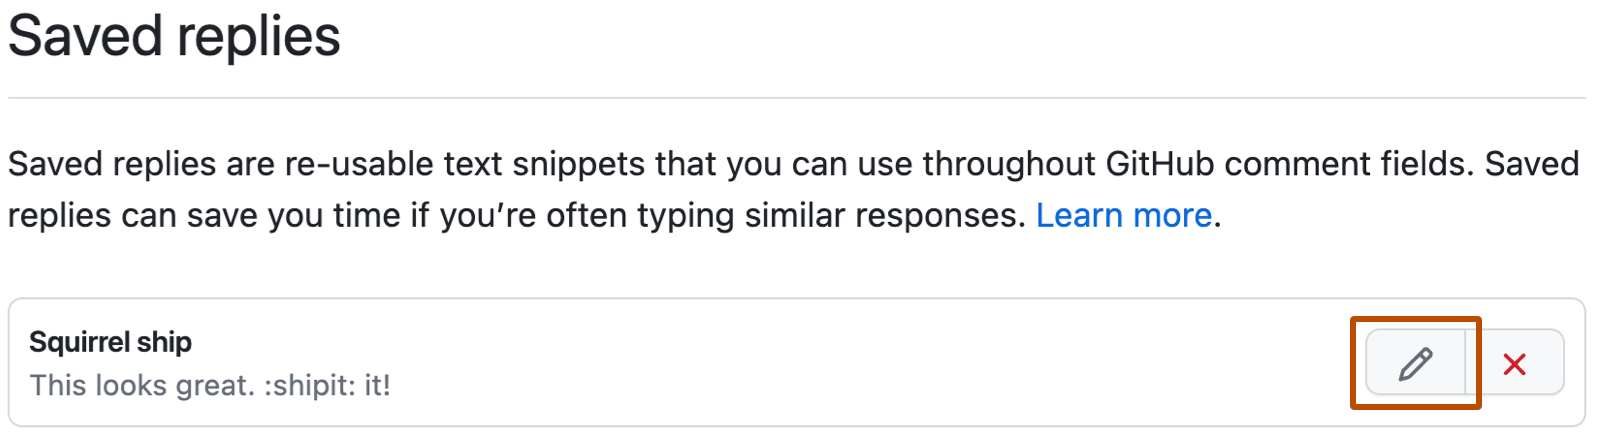 [返信テンプレート] の GitHub 設定のスクリーンショット。 返信テンプレート "Ship squirrel" の右側に、鉛筆アイコンが付いた編集ボタンが濃いオレンジ色の枠線で囲まれています。